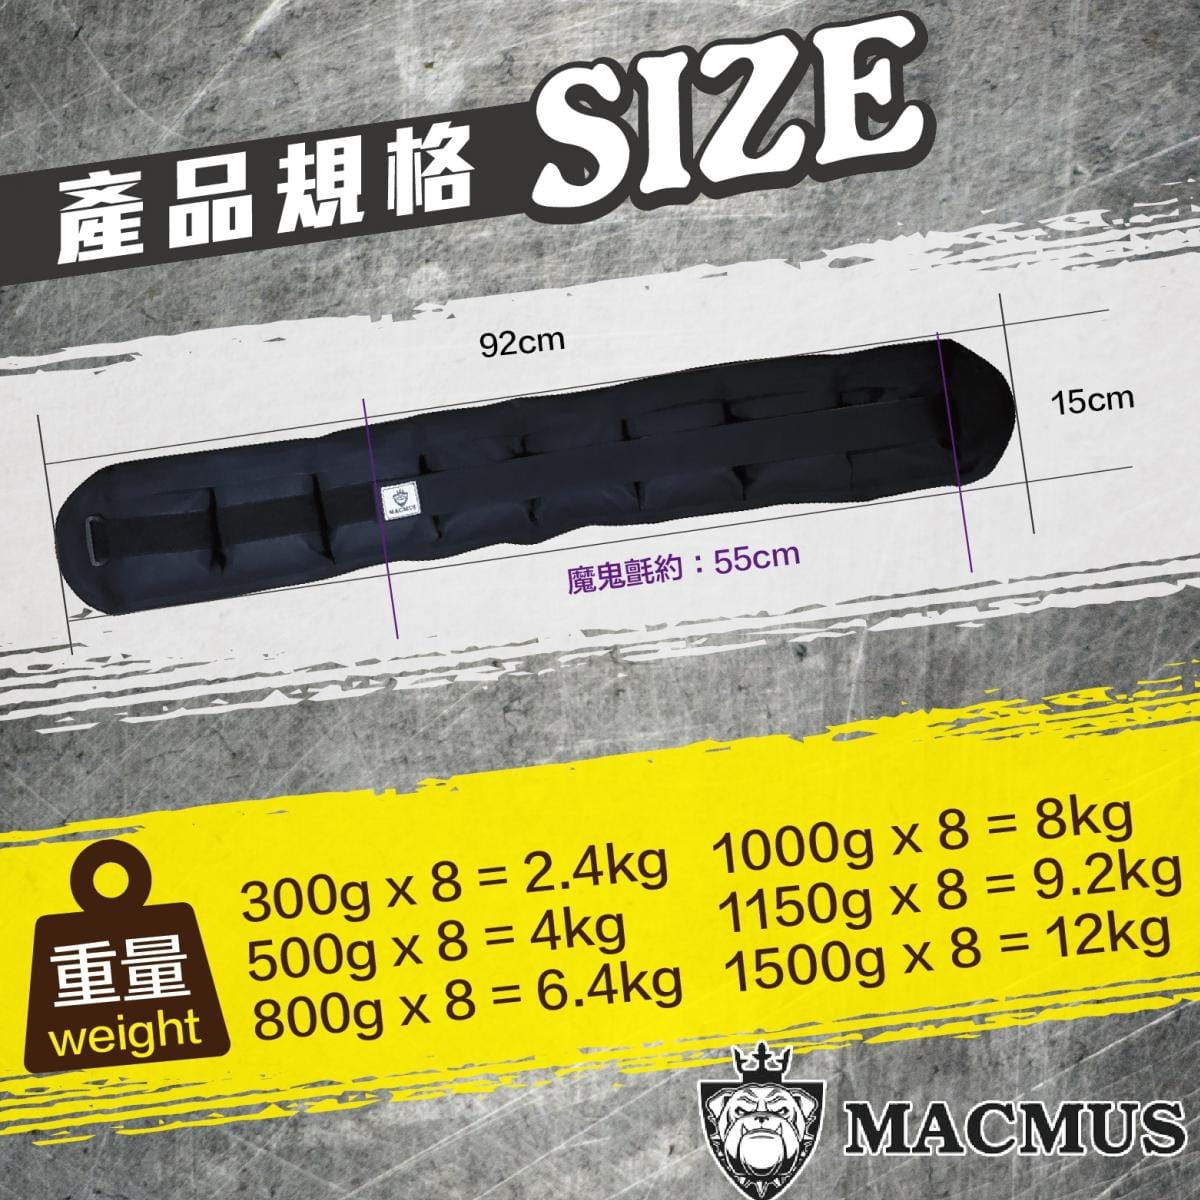 【MACMUS】4公斤負重腰帶｜8格式可調整重訓腰帶｜強化核心肌群鍛鍊腰部肌肉 1